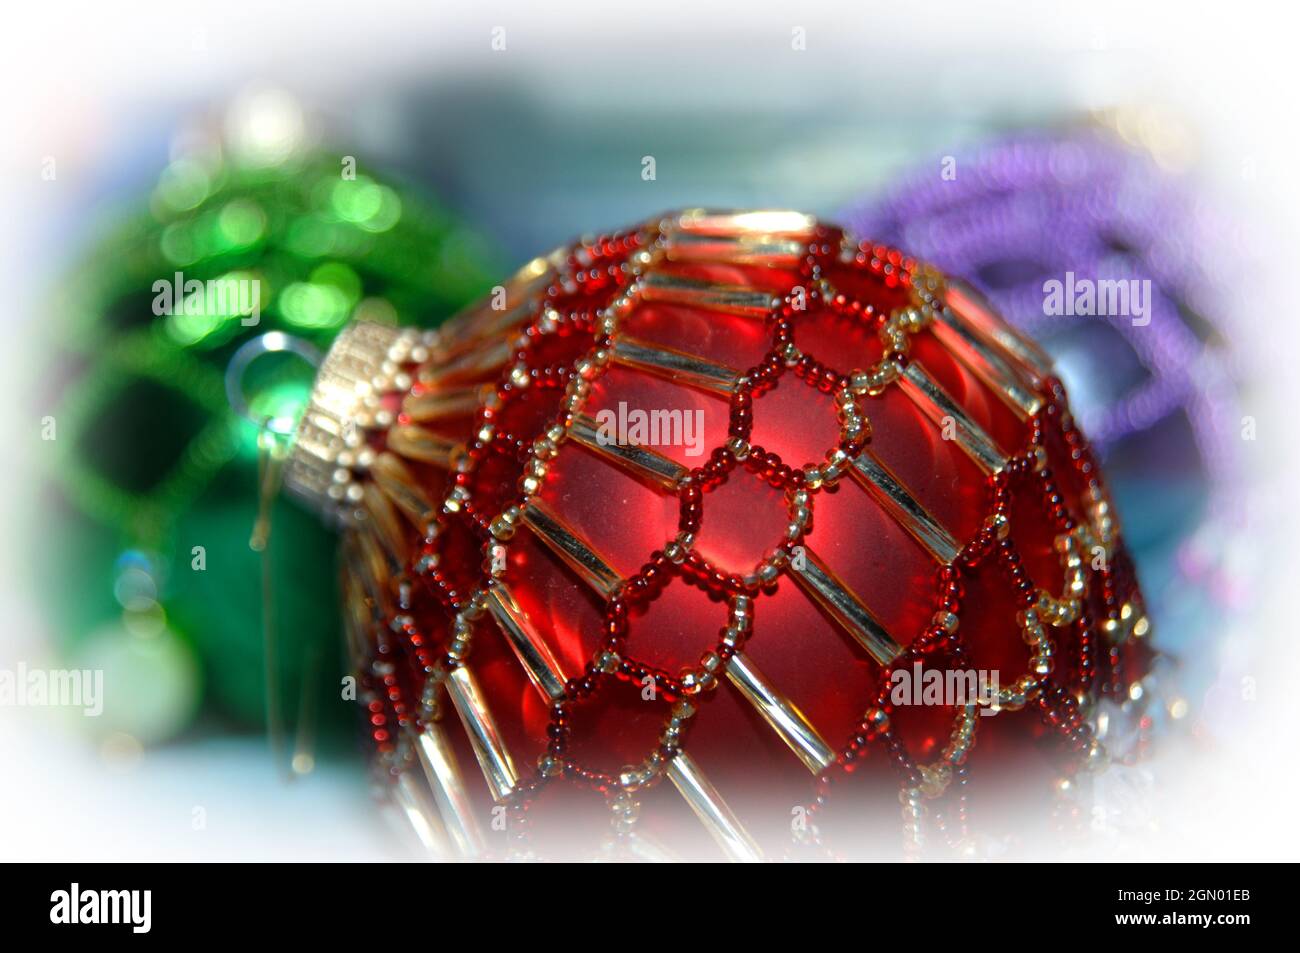 Weiches weißes Licht umgibt hausgemachte Weihnachtsschmuck. Perlen  schmücken rote und grüne Kugeln Stockfotografie - Alamy